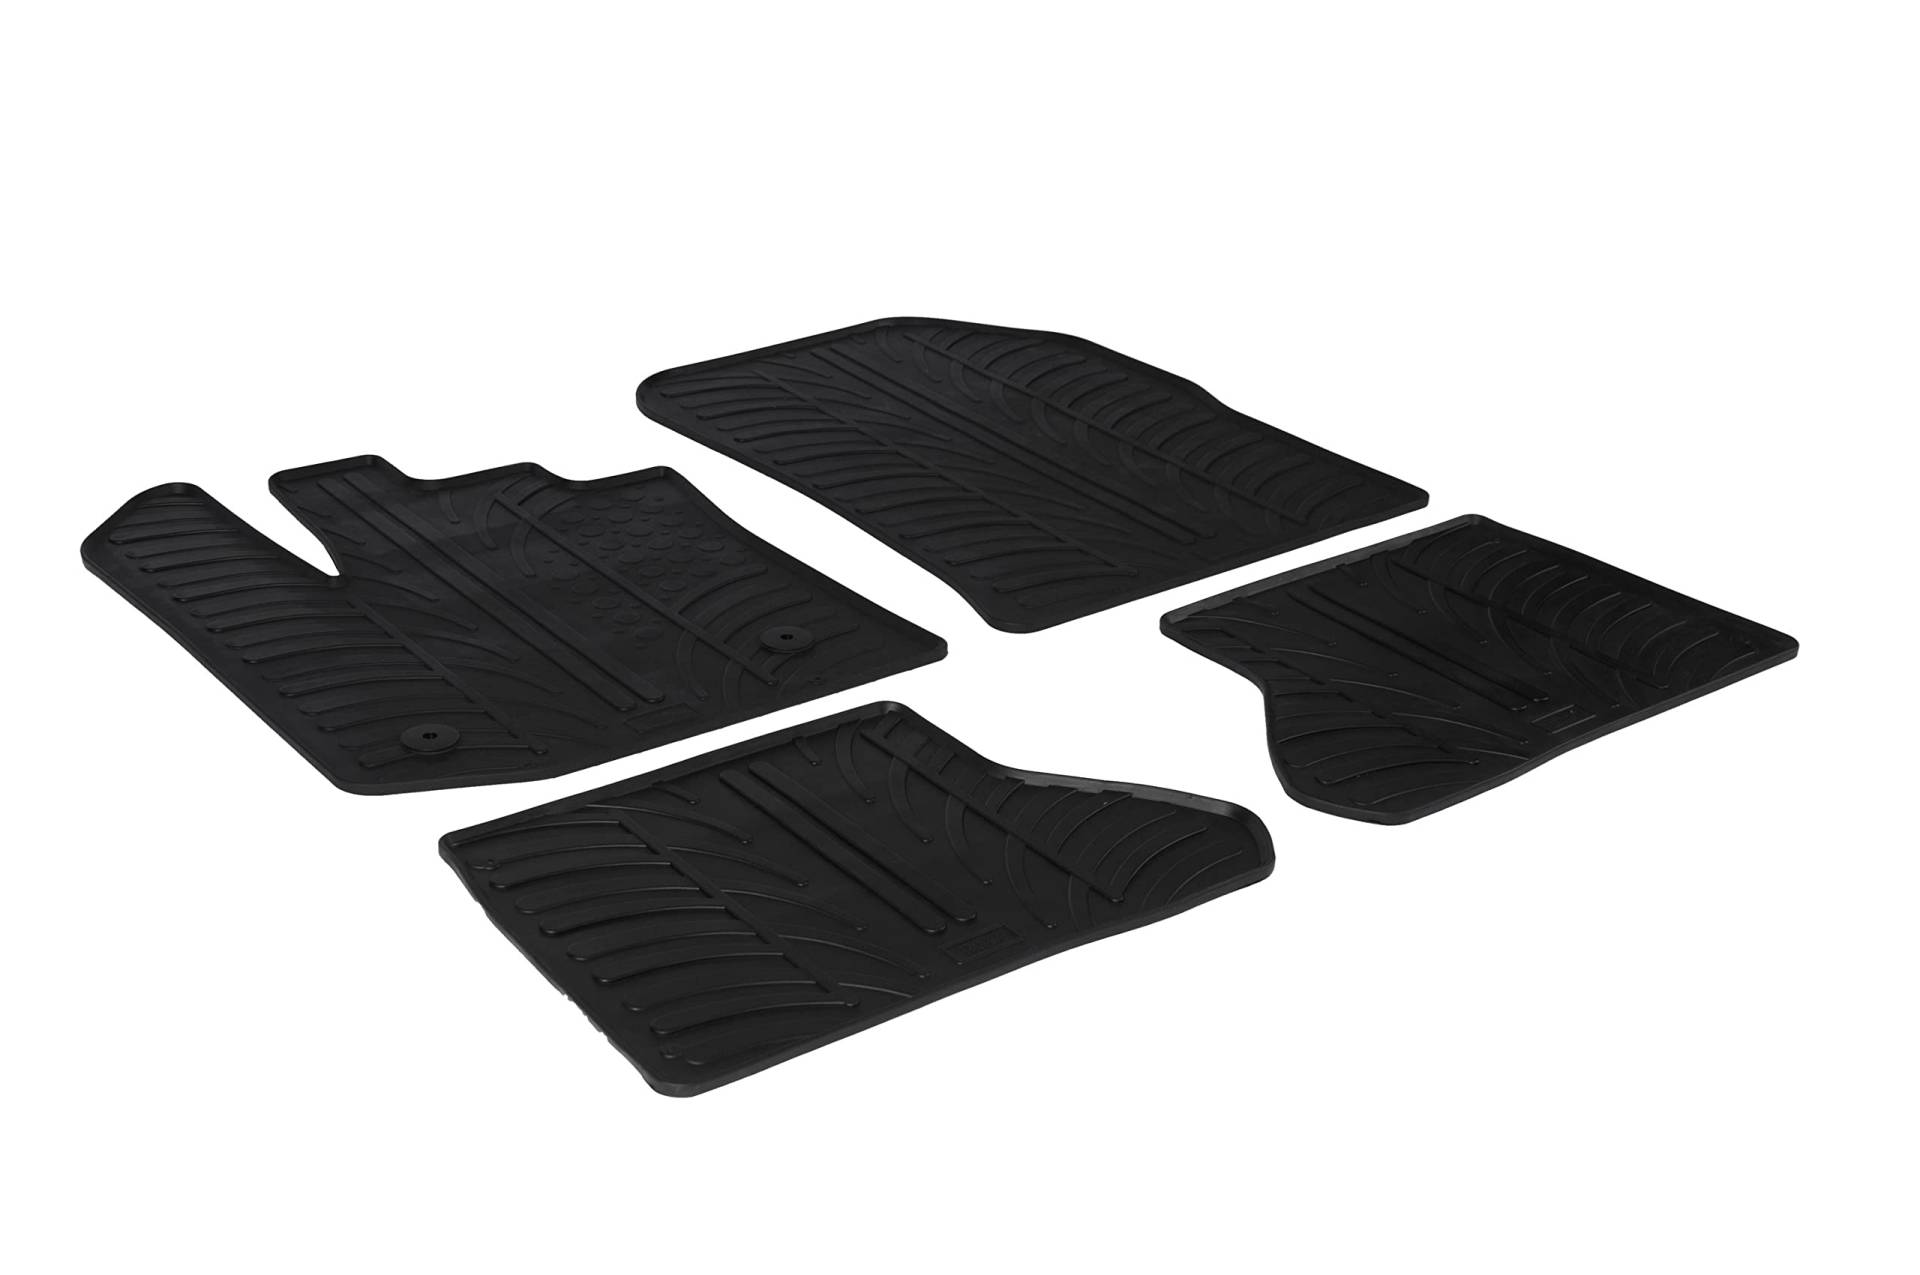 AROBA GL0176 Design Gummi Fußmatten kompatibel mit Dacia Dokker, Dokker Stepway und Dokker Express ab BJ. 12.2012> erhöhter Rand 4 TLG Farbe Schwarz Gummimatten Automatten passgenau von AROBA